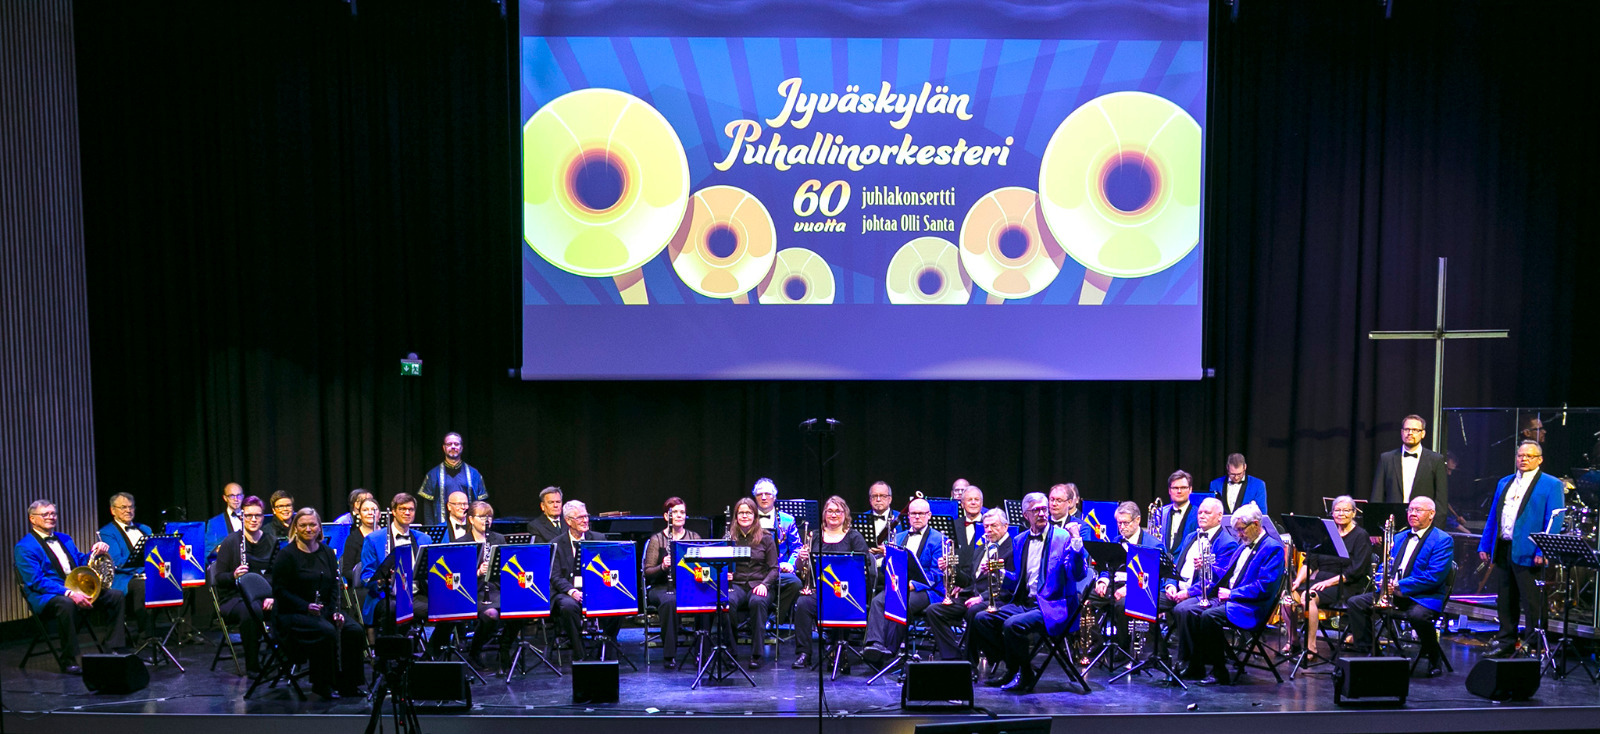 Jyväskylän Puhallinorkesterin 60 vuotta juhlakonsertin kokoonpano